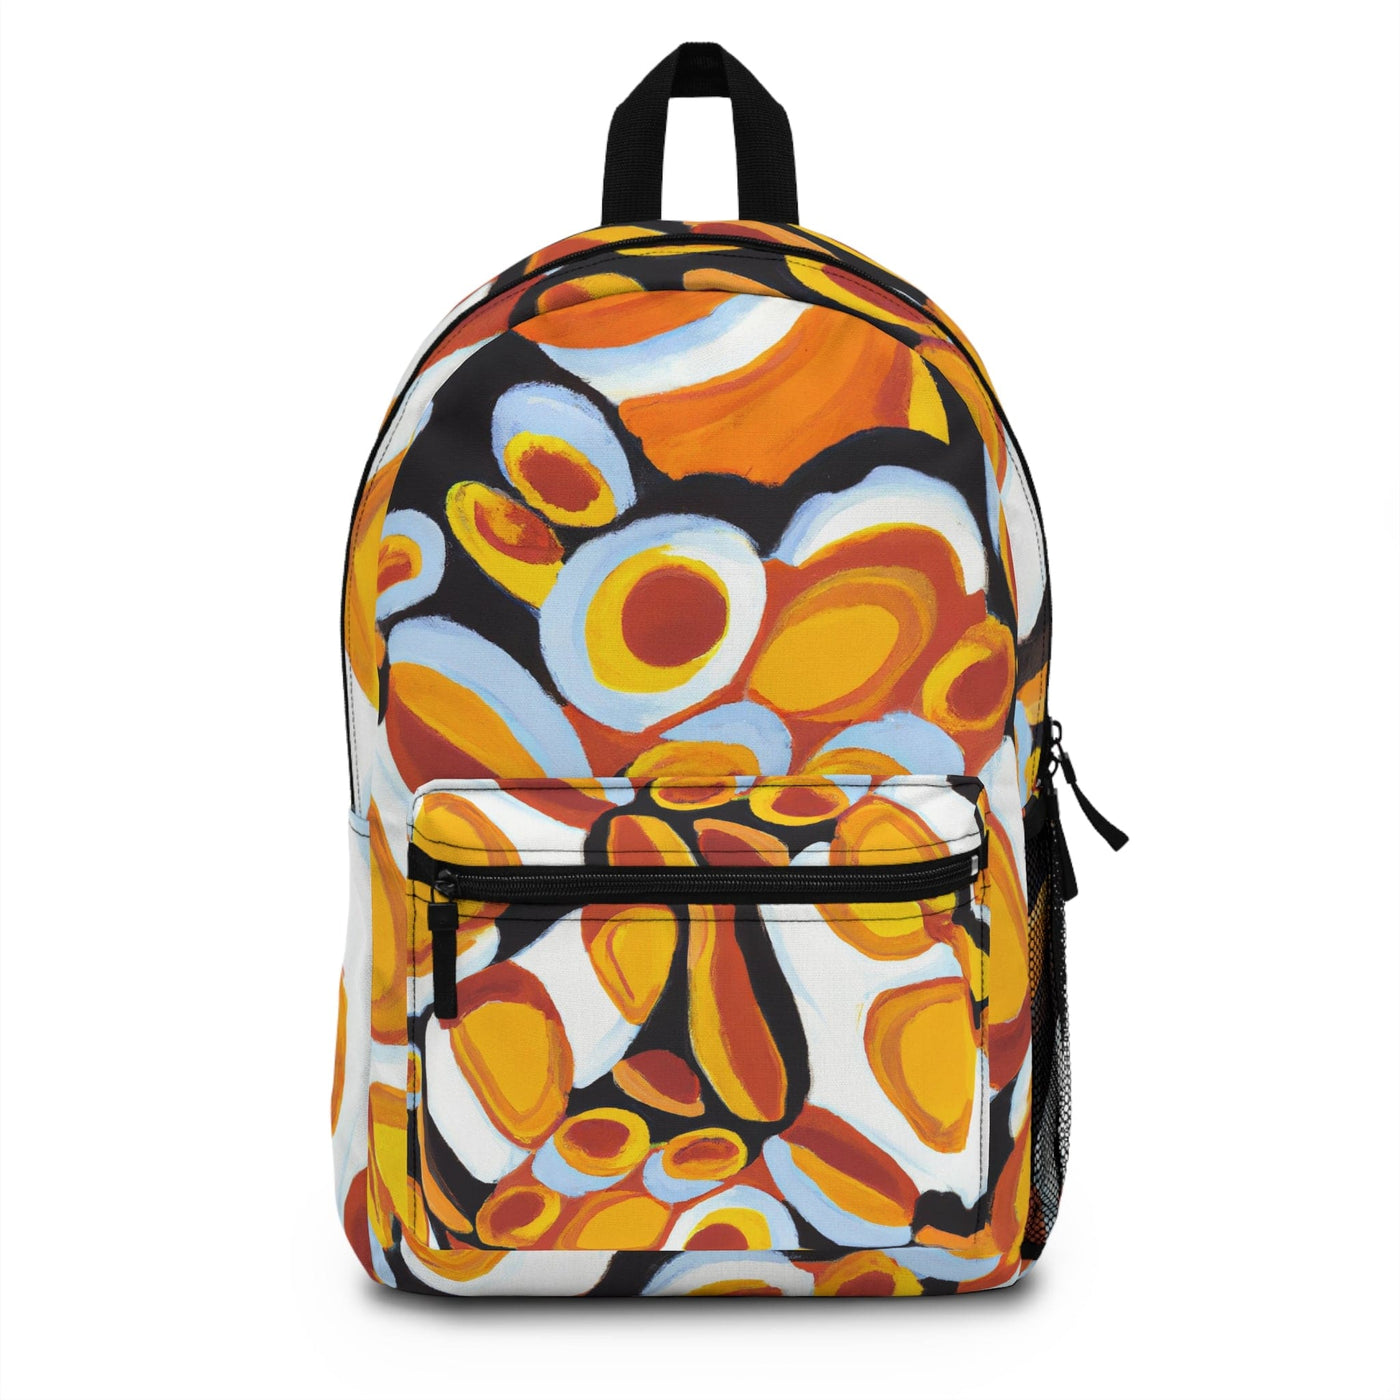 Backpack Work/school/leisure - Waterproof Orange Black White Geometric Print